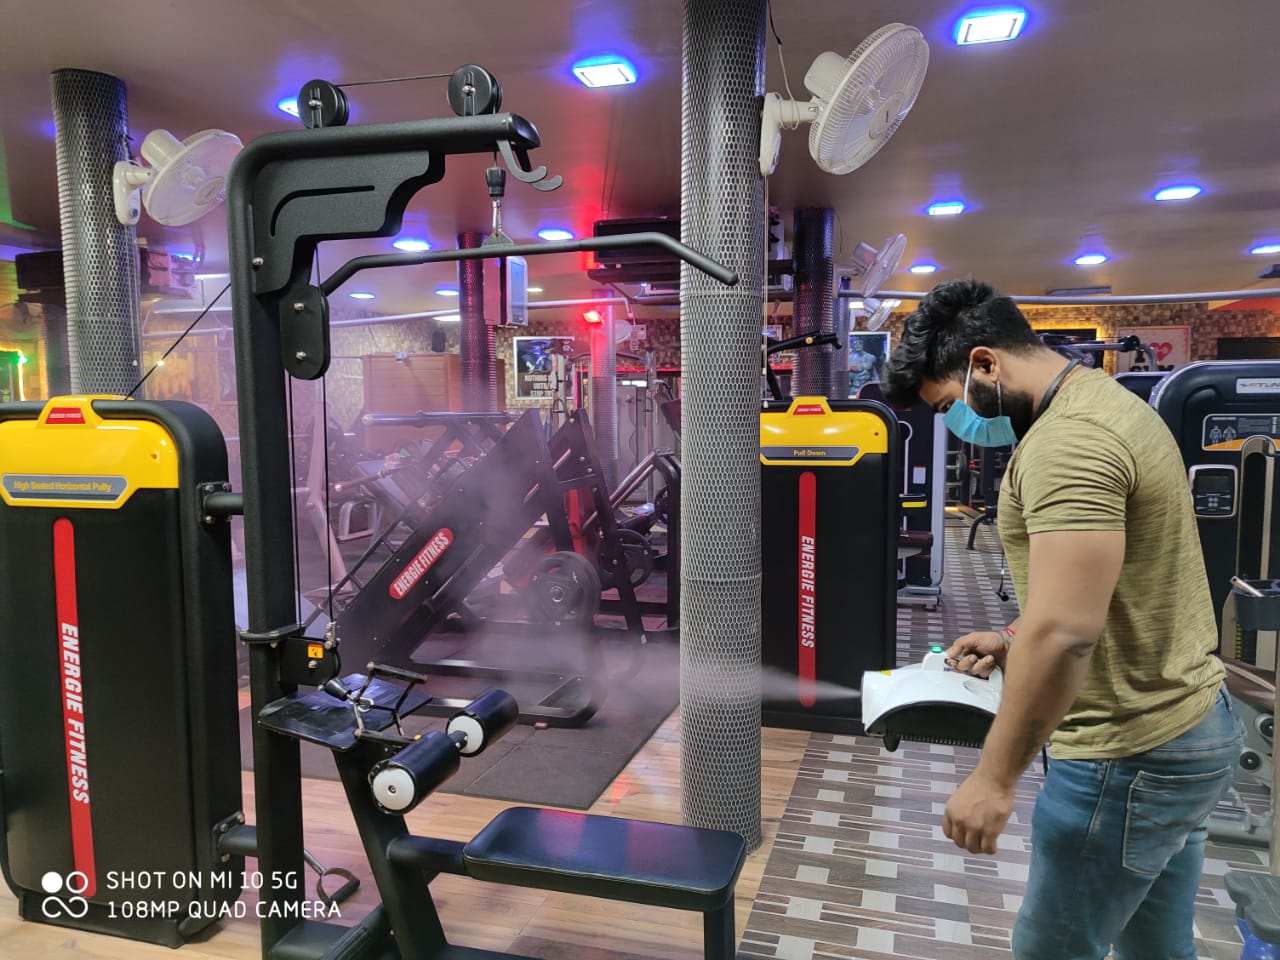 136 दिनों बाद रीवा में भी शुरू हुआ Gym, जाने से पहले इन बातों का जरूर रखें ध्यान